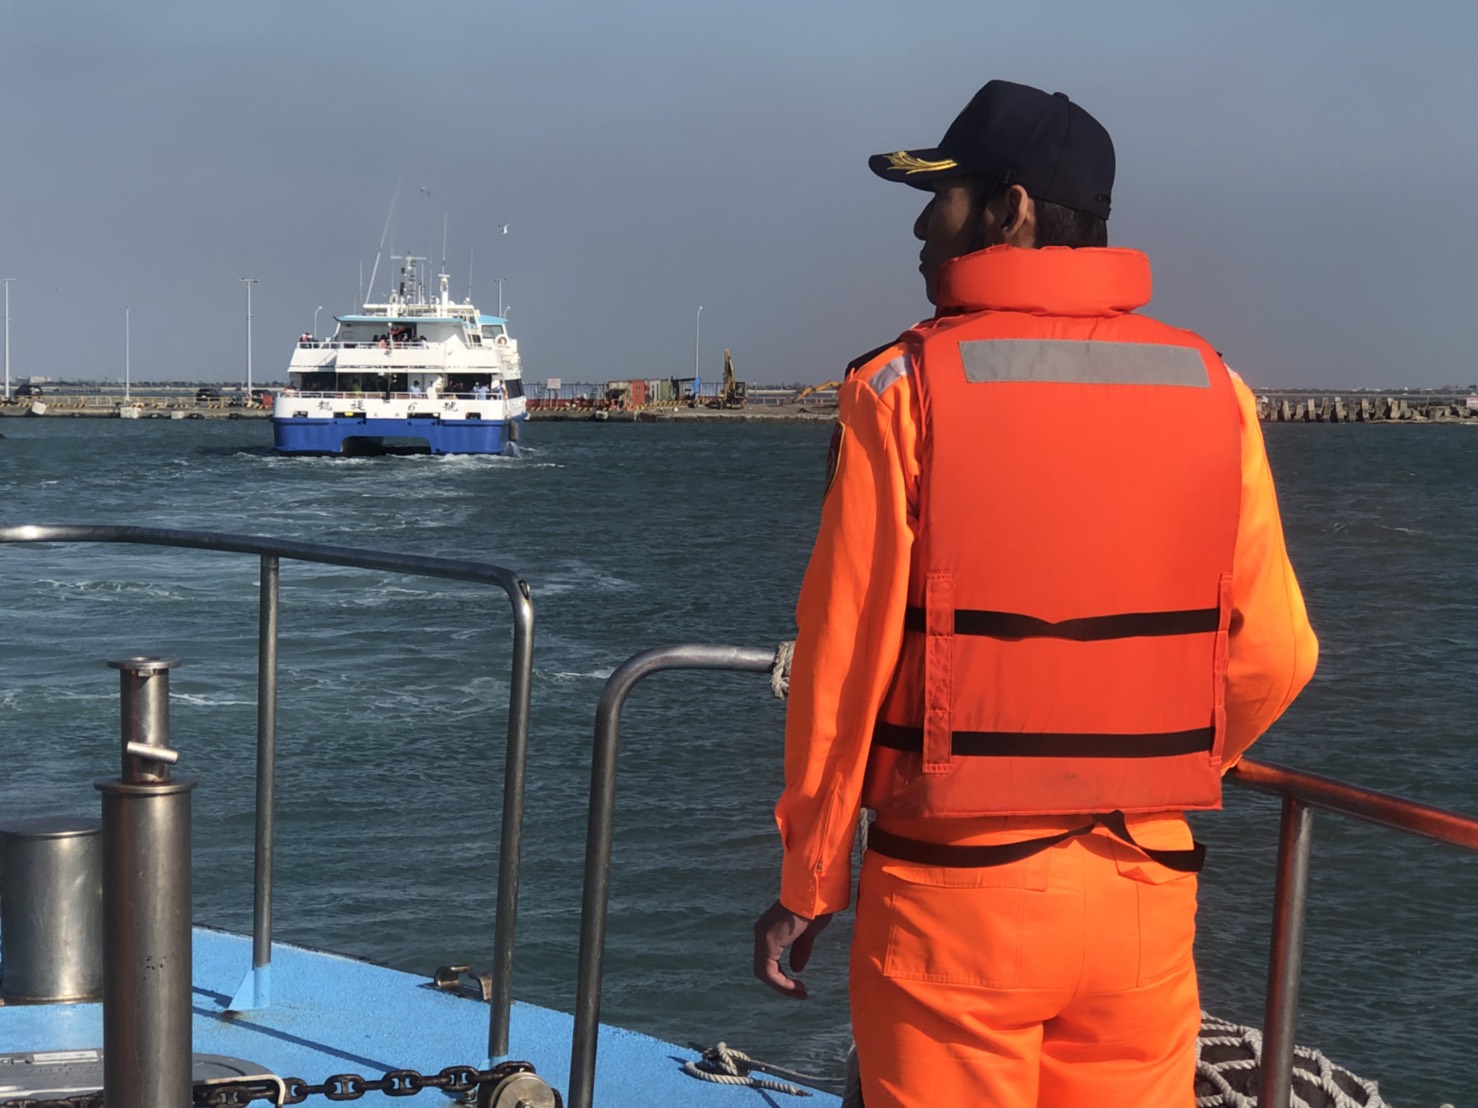 滿載遊客客輪海上遇故障 布袋海巡急援戒護入商港